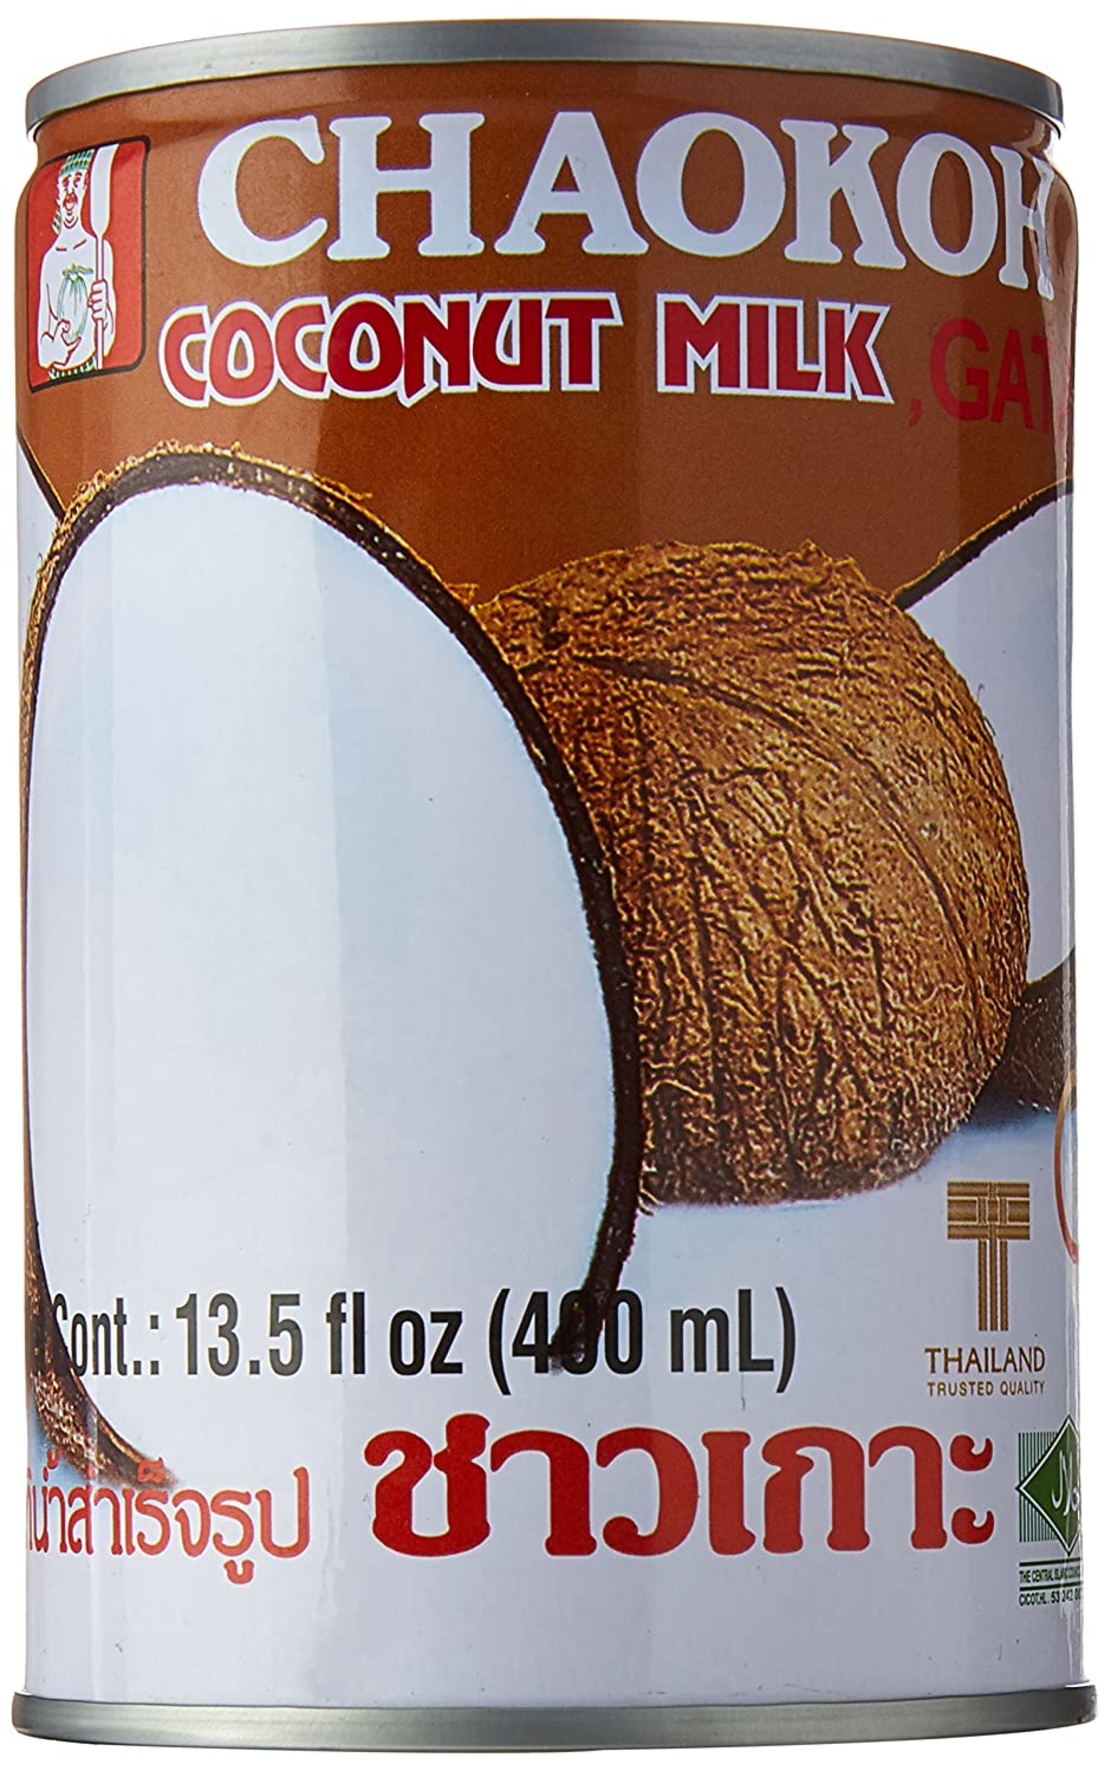 Gata - Chaokoh - Coconut Cream 400 ml